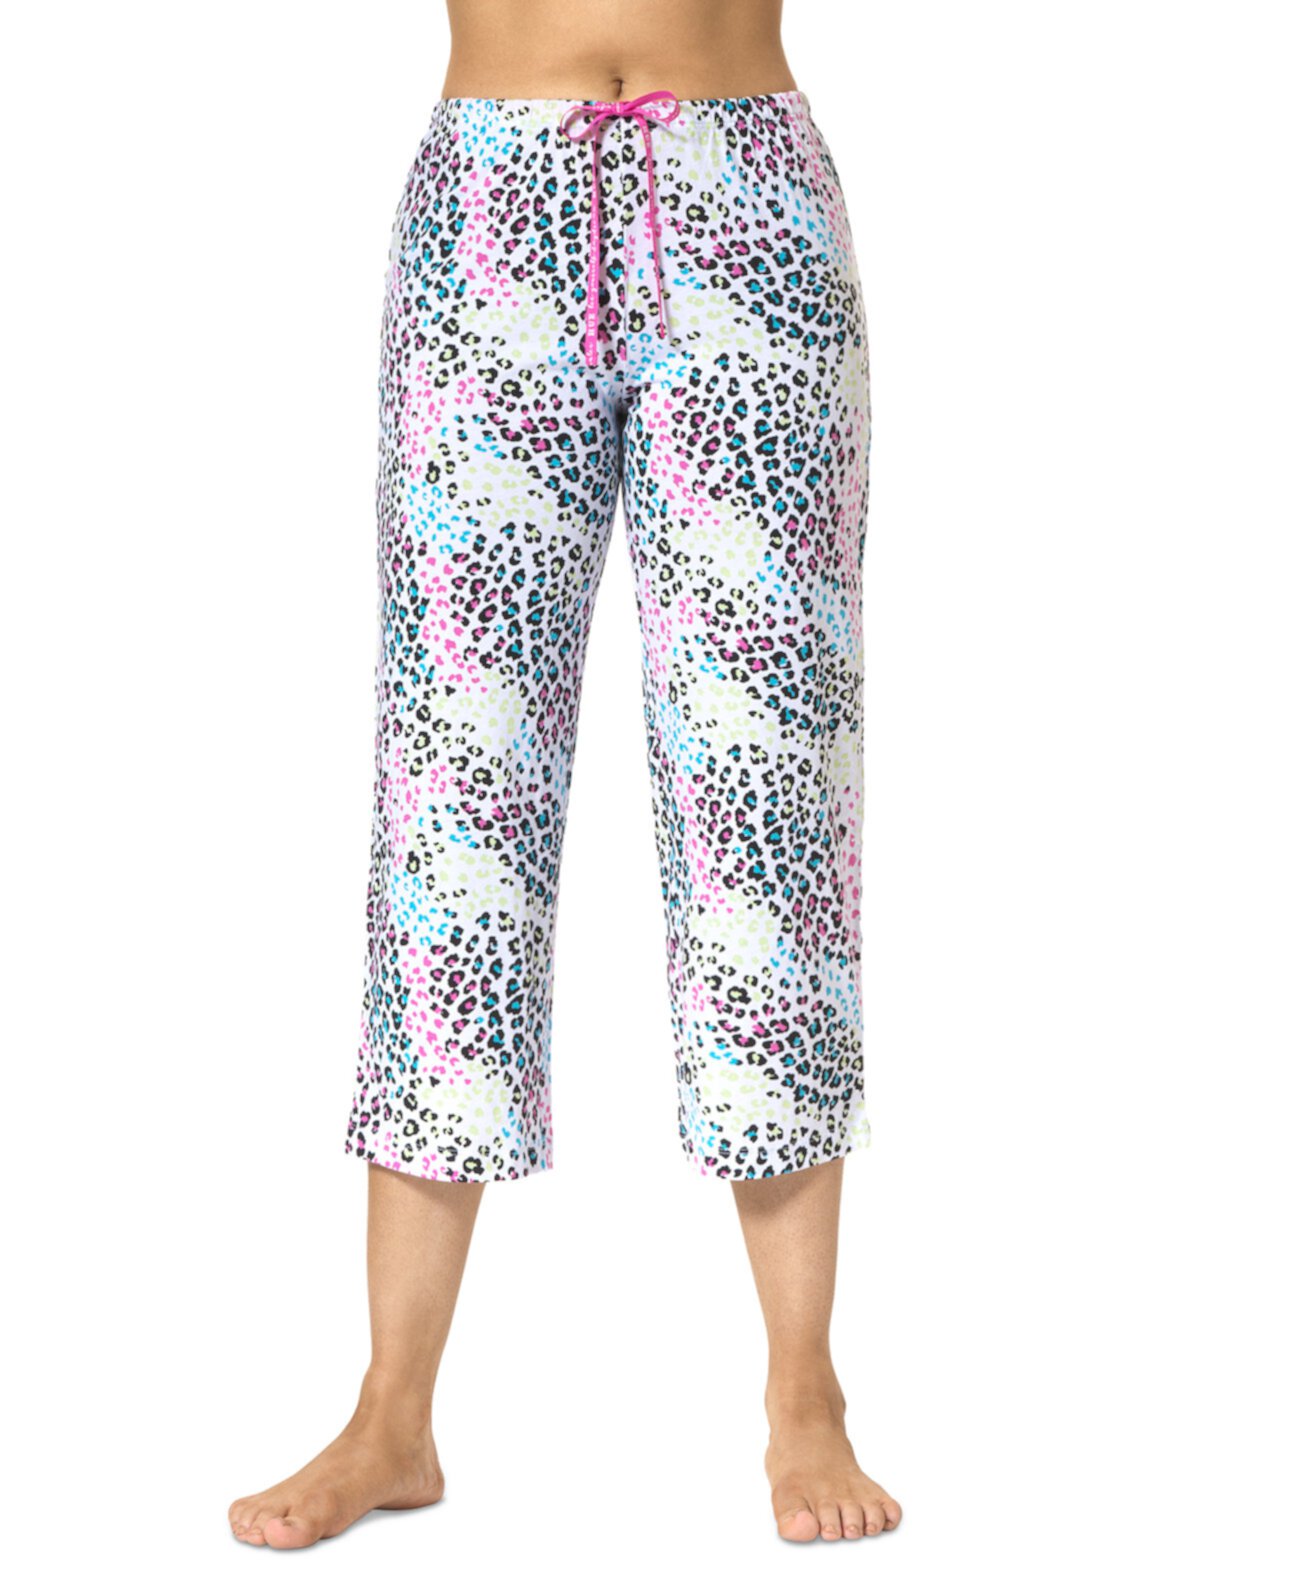 Women's Spring Leopard Printed Capri Pajama Pants HUE